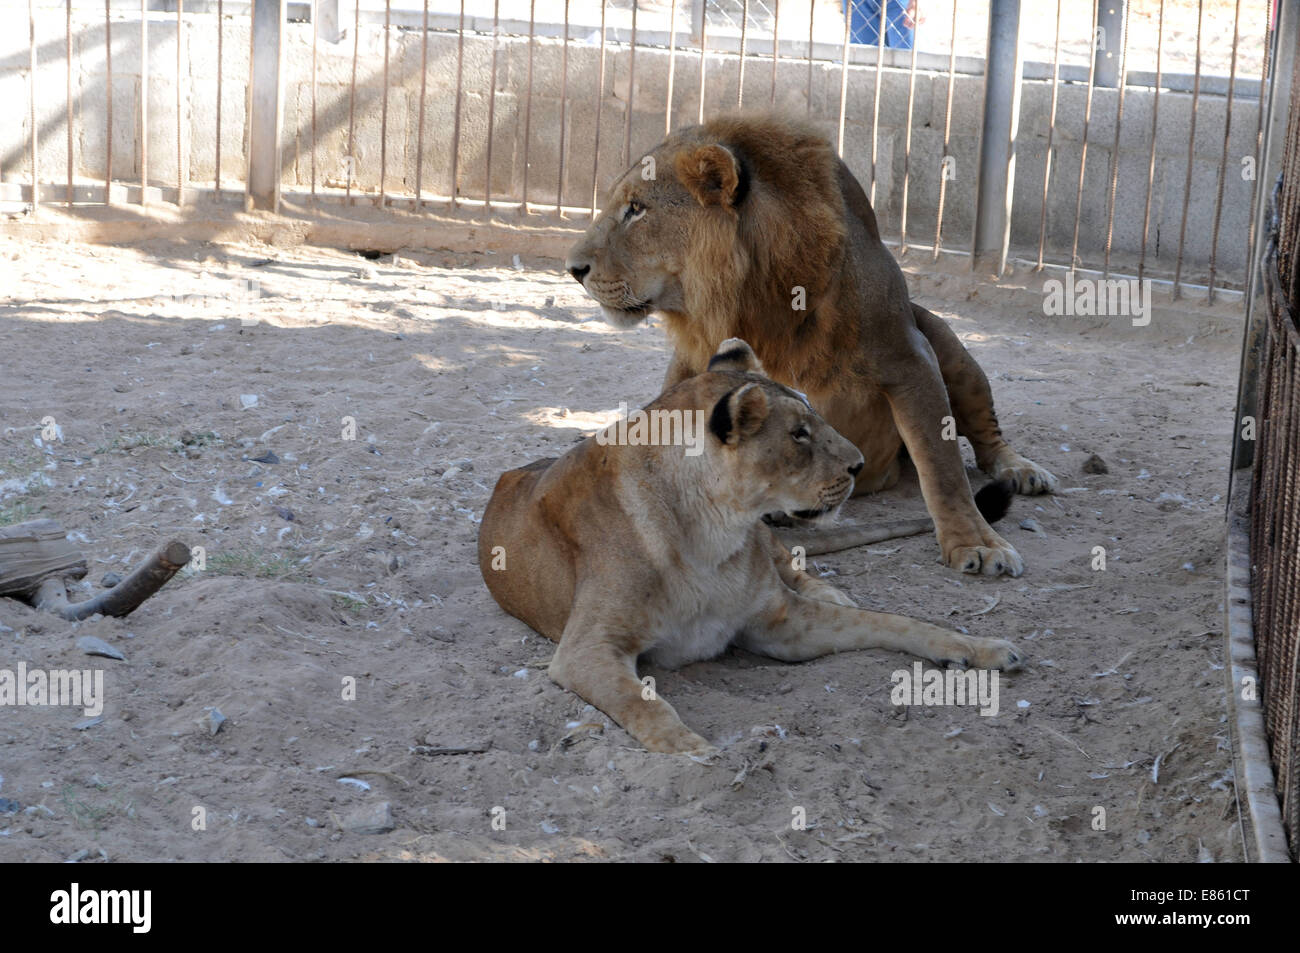 La franja de Gaza. 30 Sep, 2014. Un león es visto dentro de una jaula en el zoo de Bisan, en la ciudad de Gaza el 30 de septiembre, 2014. Un equipo médico de una ONG, las cuatro patas, se prepara para transferir tres leones del zoo a un santuario de vida silvestre en Jordania por el cruce de Erez, tras su zoológico fue dañada en la reciente guerra Israel-Hamas. © Pool/Xinhua/Alamy Live News Foto de stock